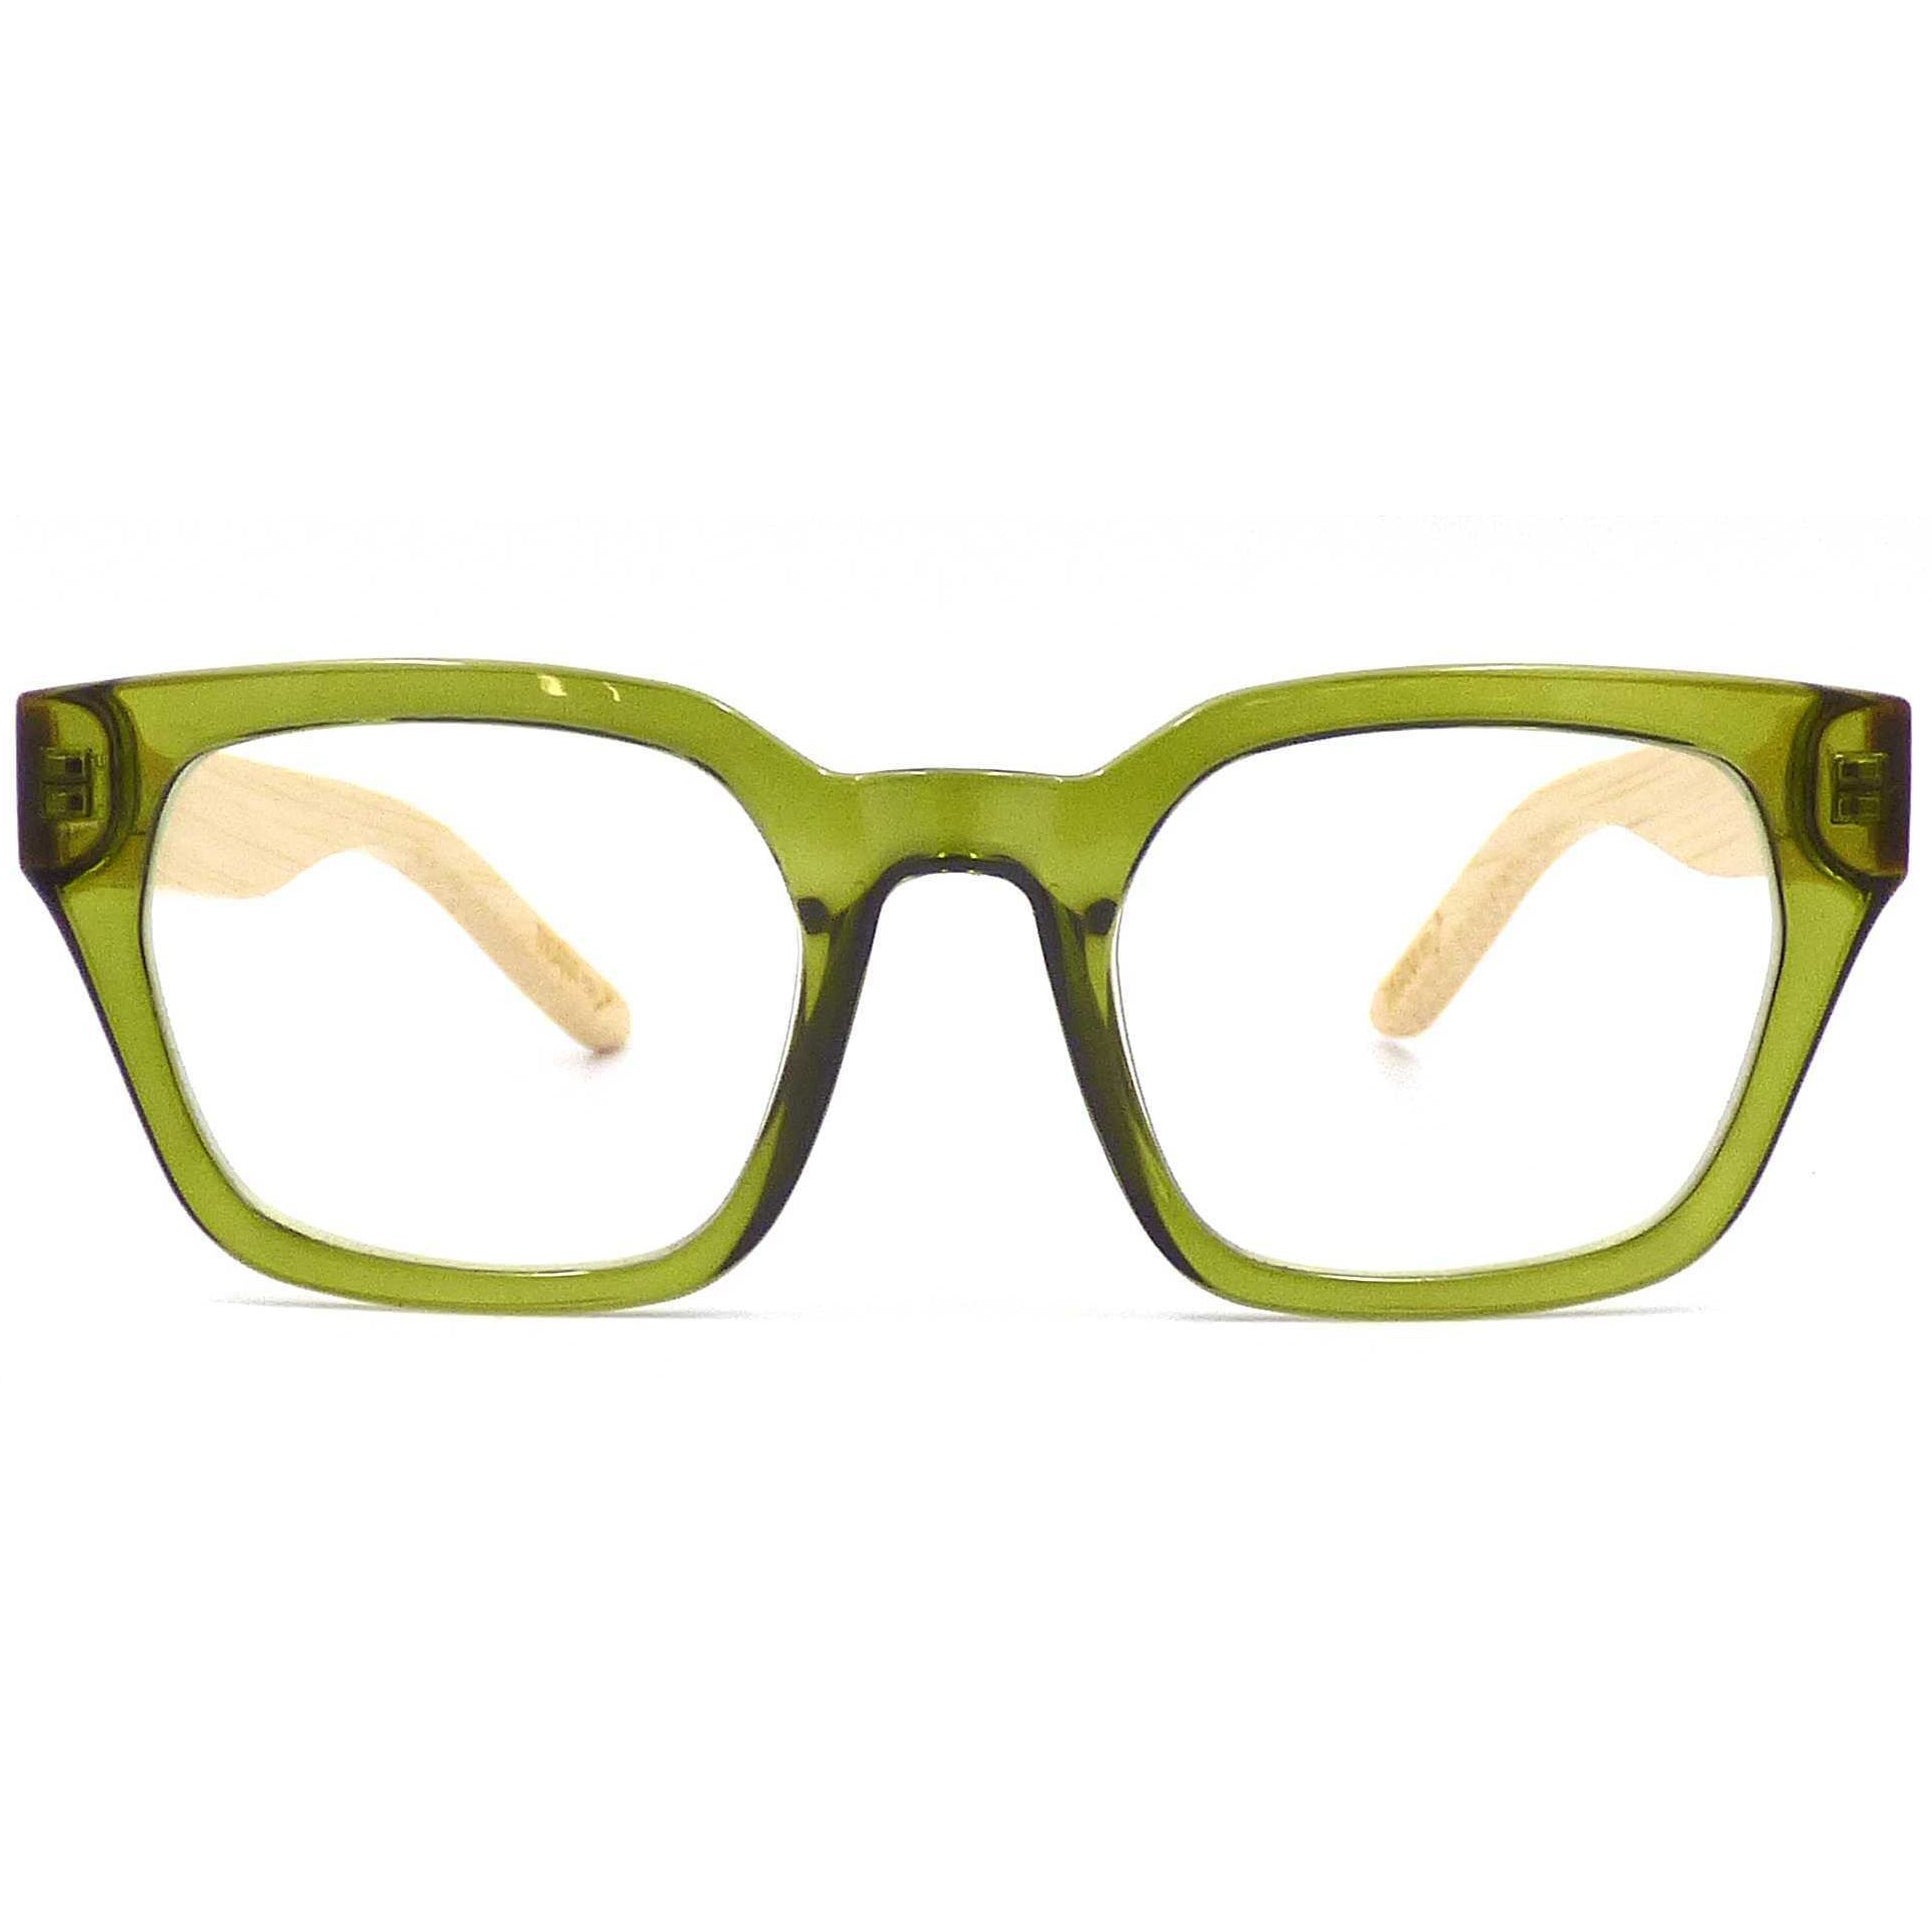 Moana Road Reading Glasses - Green +2.0